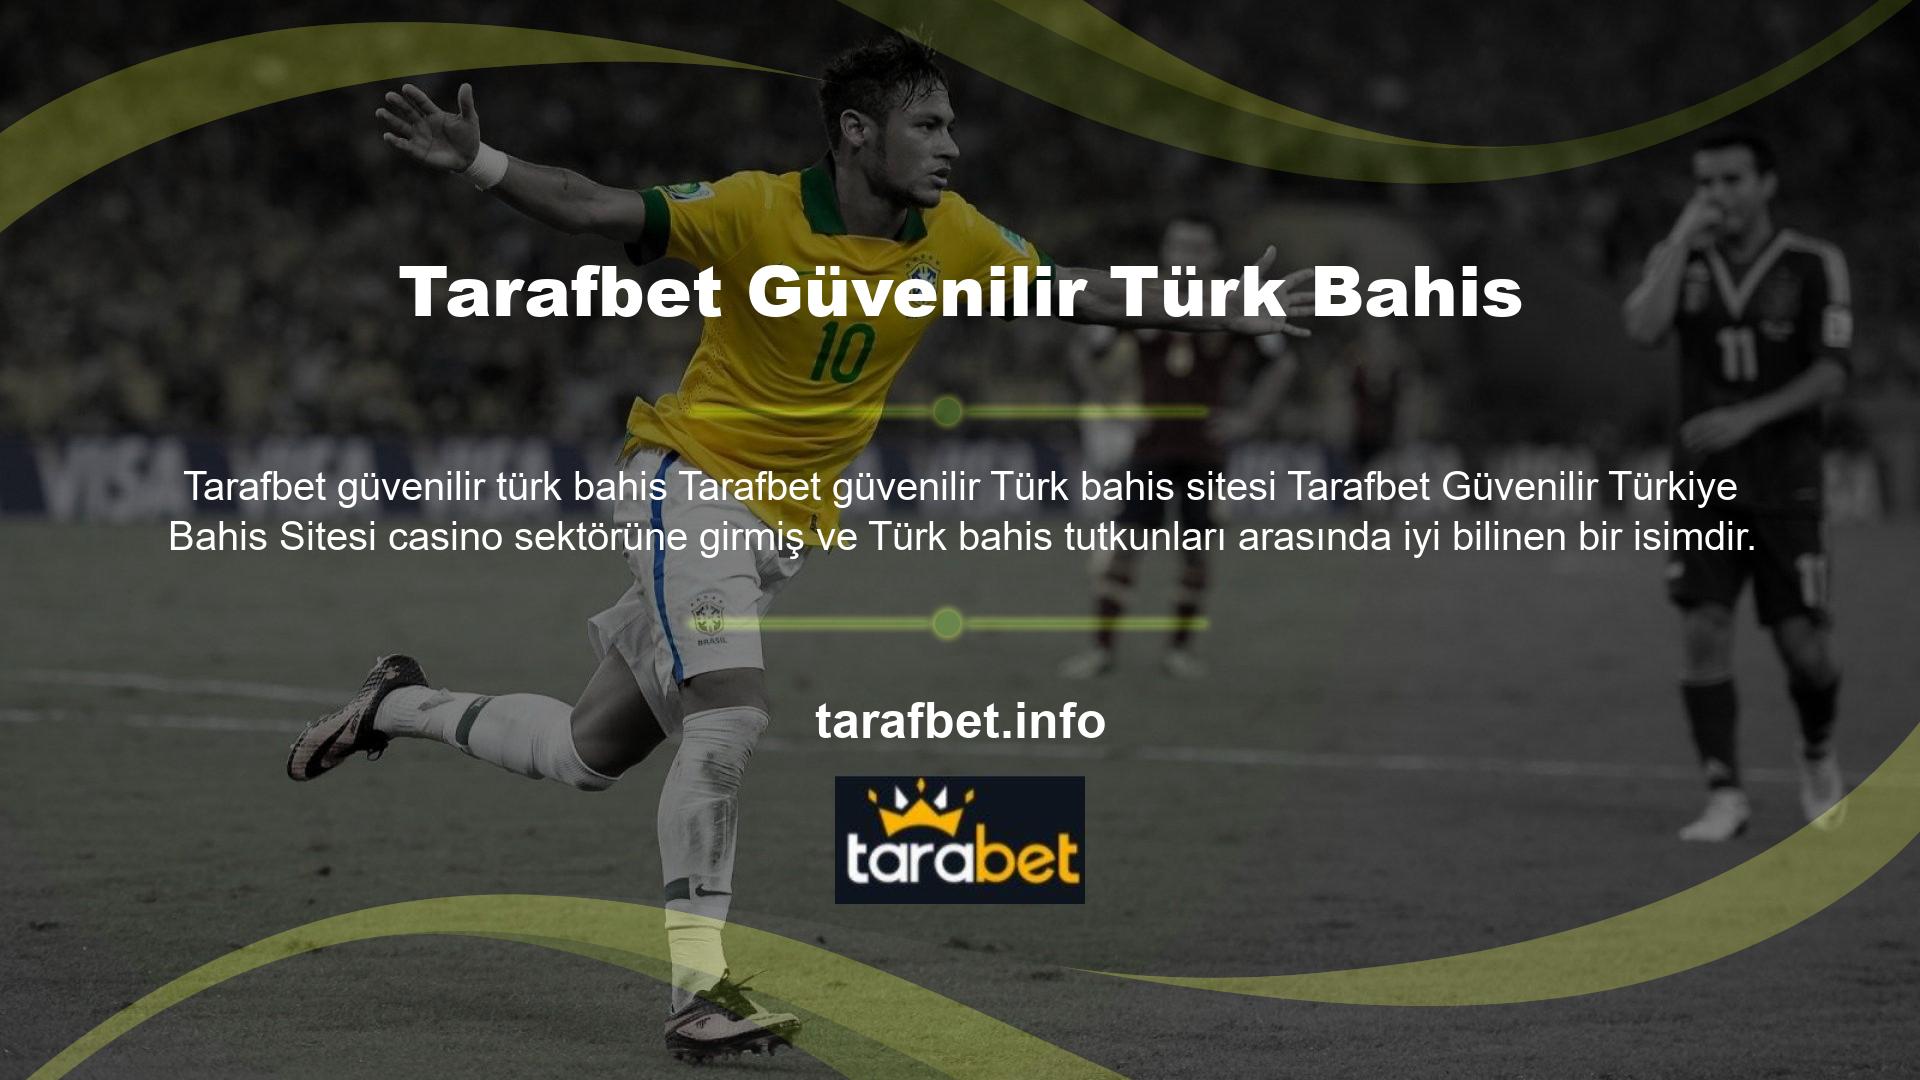 Tarafbet çeşitli dillerde mevcuttur ve Türk bahis tutkunlarına özel bir oyun sunmak için bu dillere Türkçe seçenekleri de eklemiştir